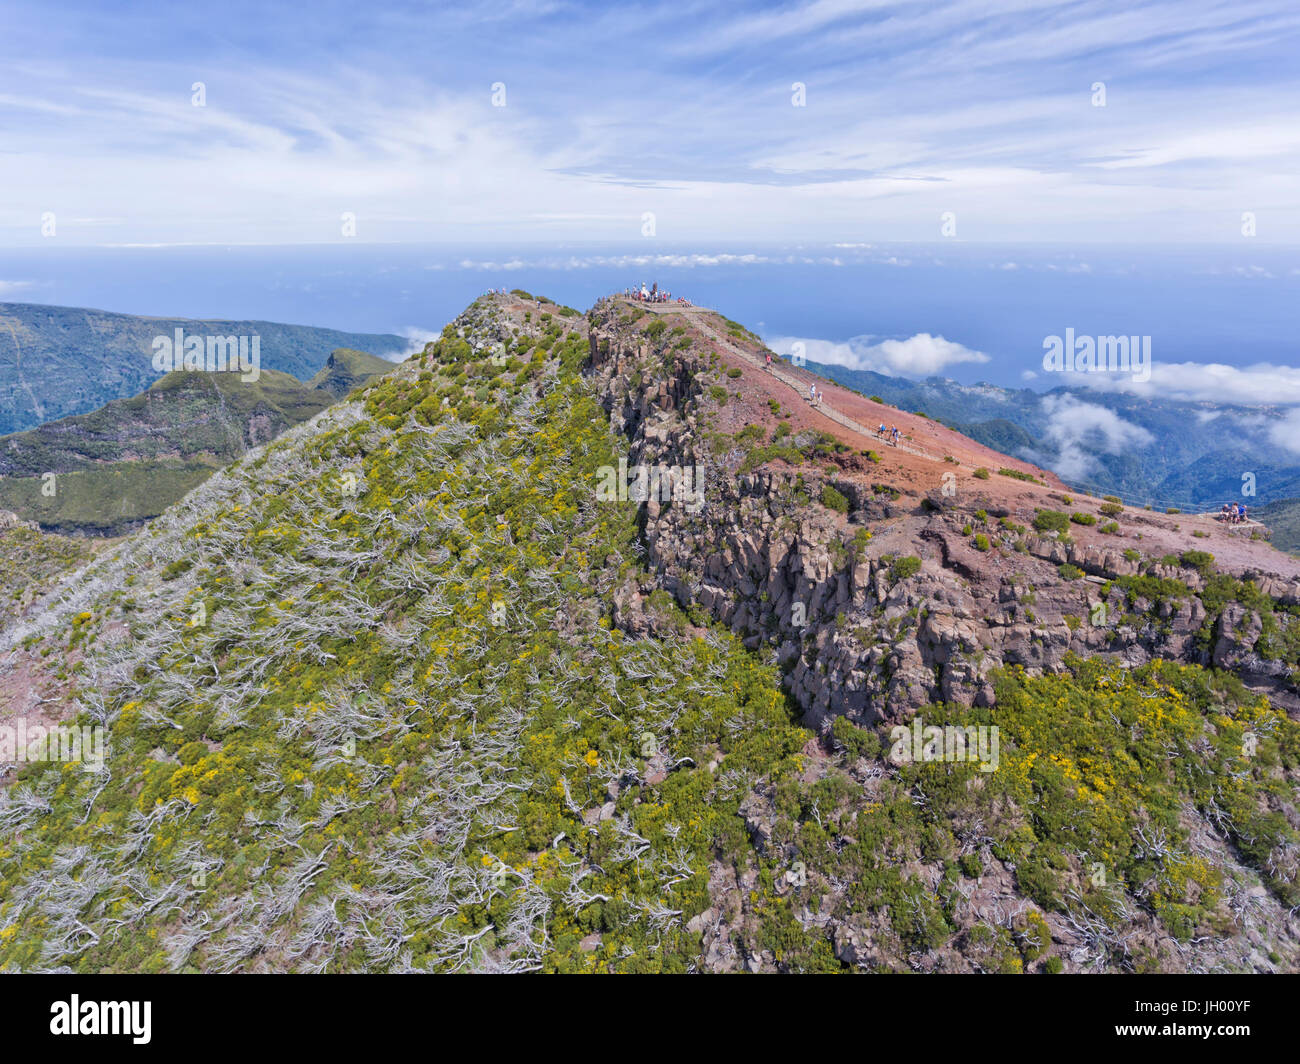 Vue aérienne du plus haut sommet de l'île de Madère, Pico Ruivo, des randonneurs sur un sentier de randonnée vers le haut et les nuages bas dans la vallée . Banque D'Images